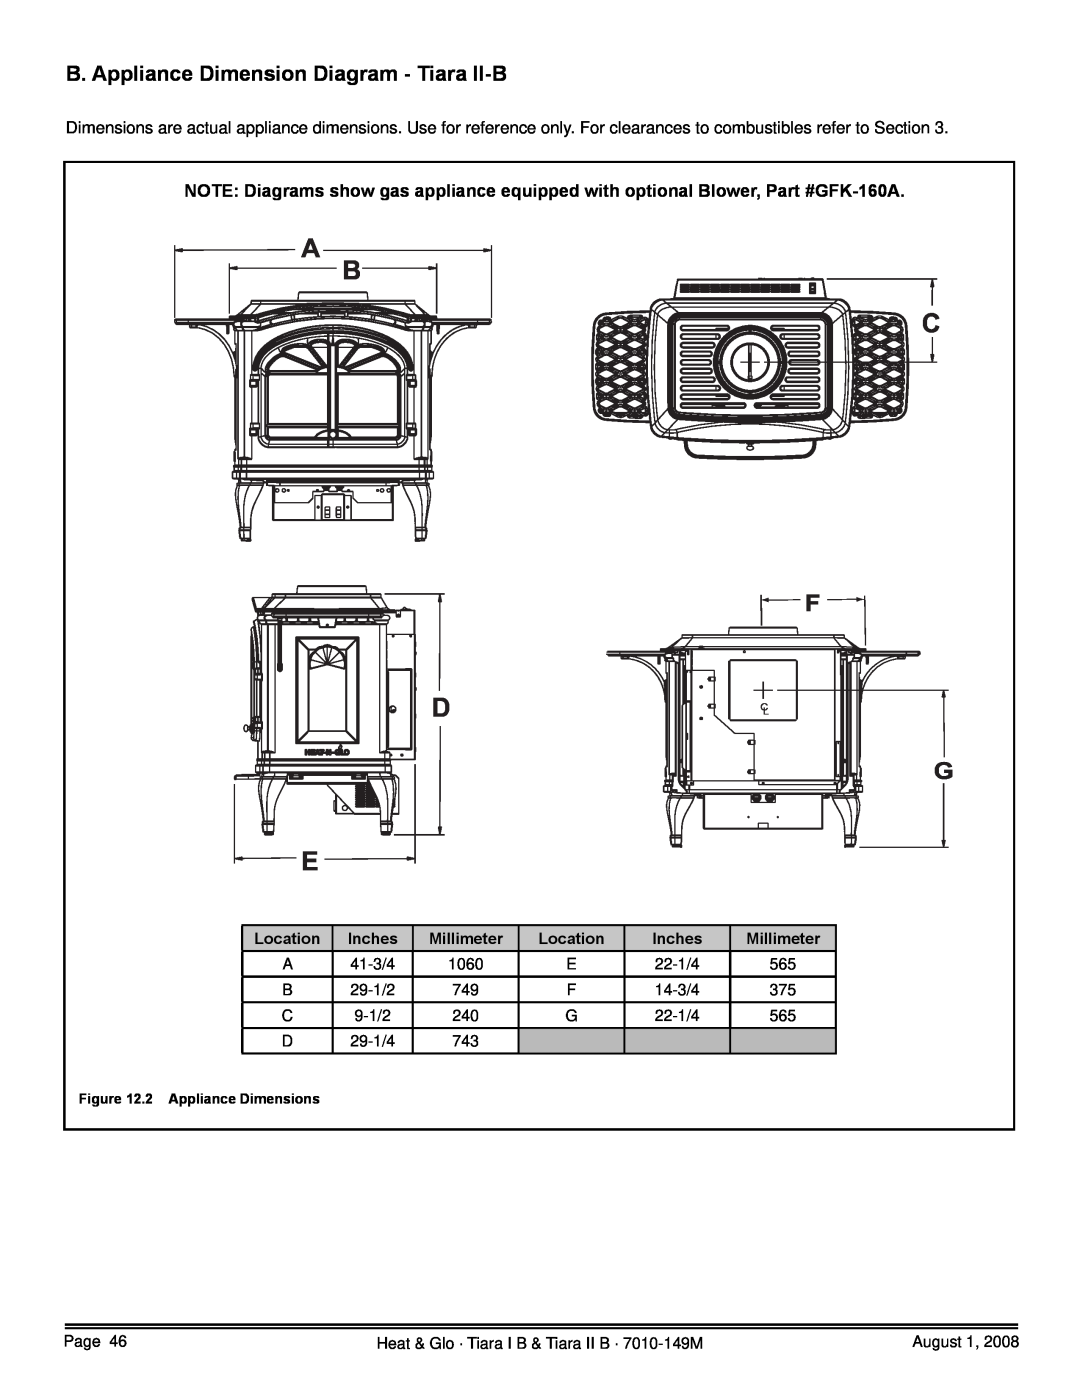 Hearth and Home Technologies TIARAI-BK-B B. Appliance Dimension Diagram - Tiara II-B, A B C, Location, Inches, Millimeter 